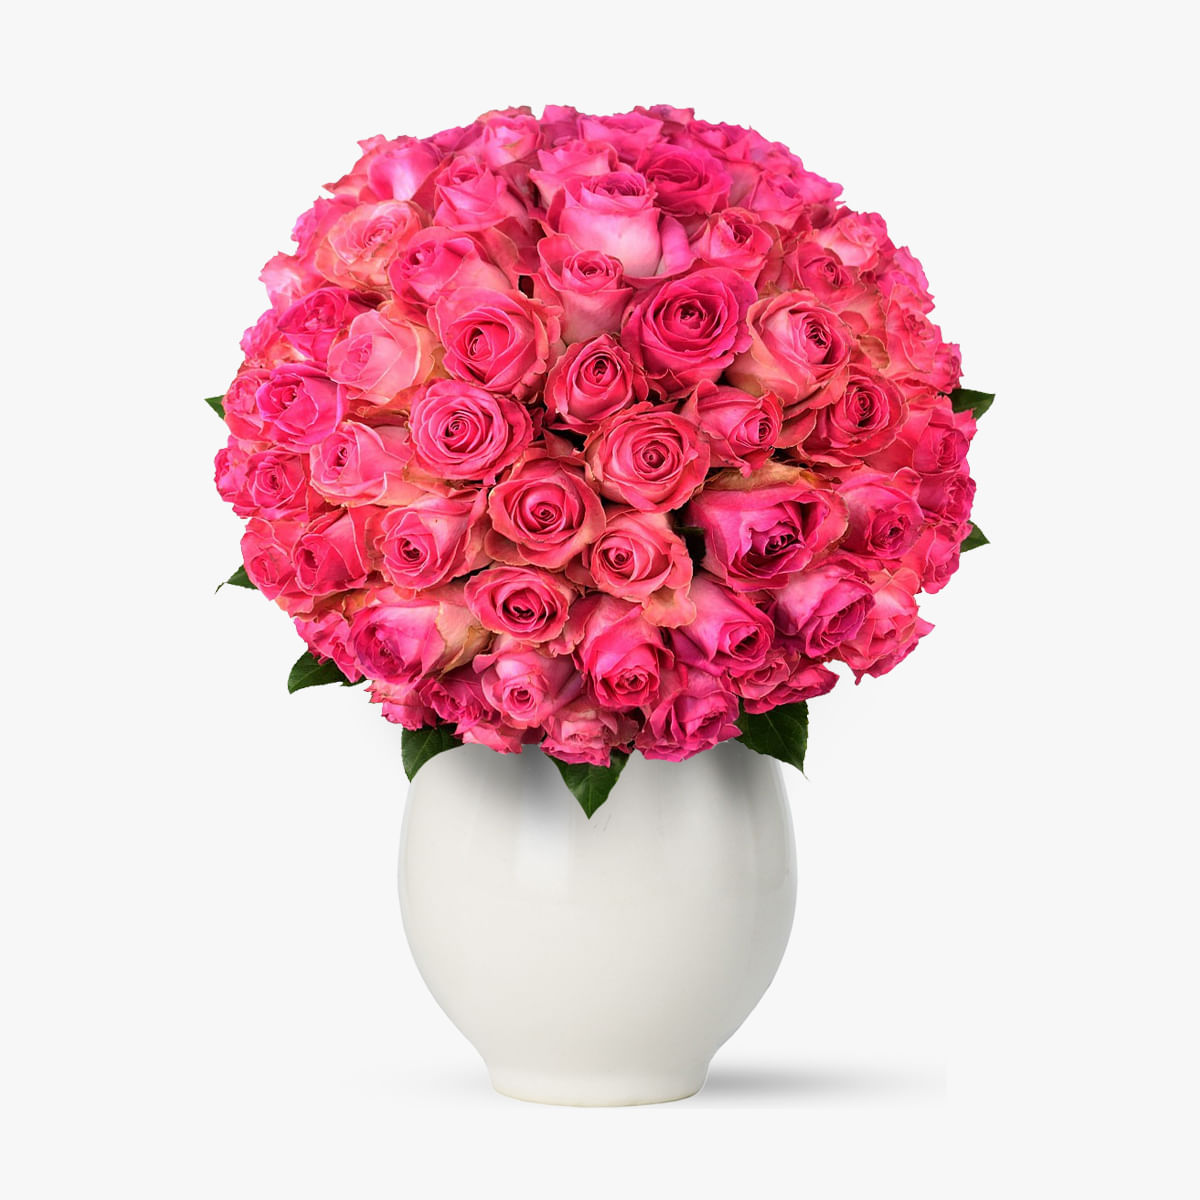 Buchet de 75 trandafiri roz Floria imagine 2022